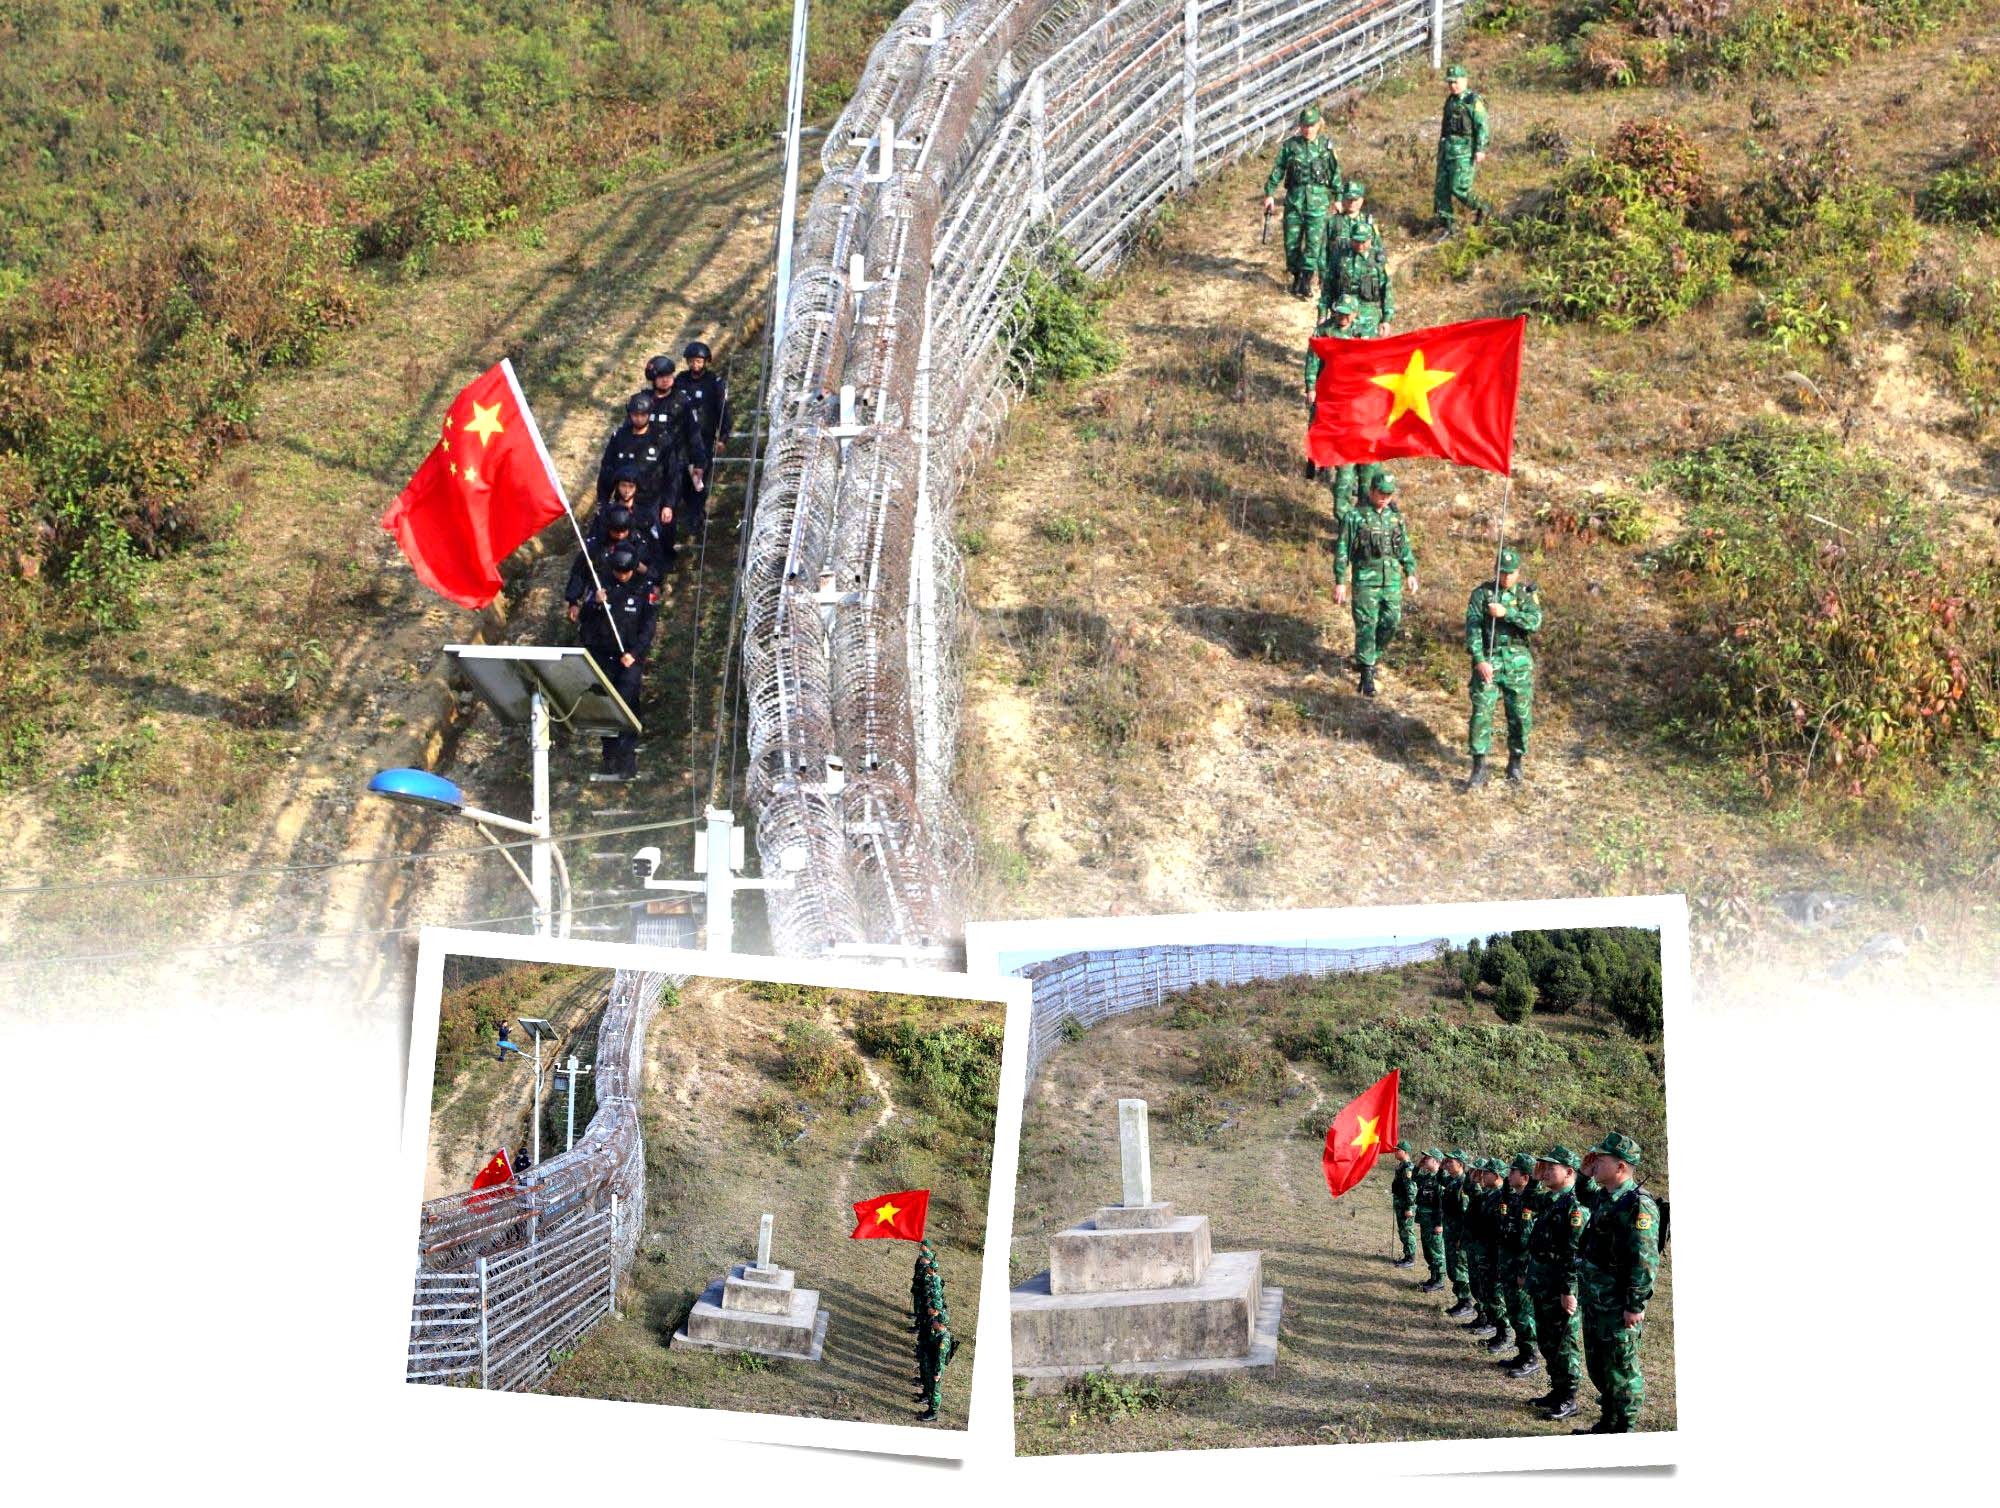 Chuyện những người “Ăn rừng ngủ núi” giữ biên ở Hà Giang - Bài 3: Xây dựng nền quốc phòng toàn dân, khu vực biên giới hòa bình, hữu nghị